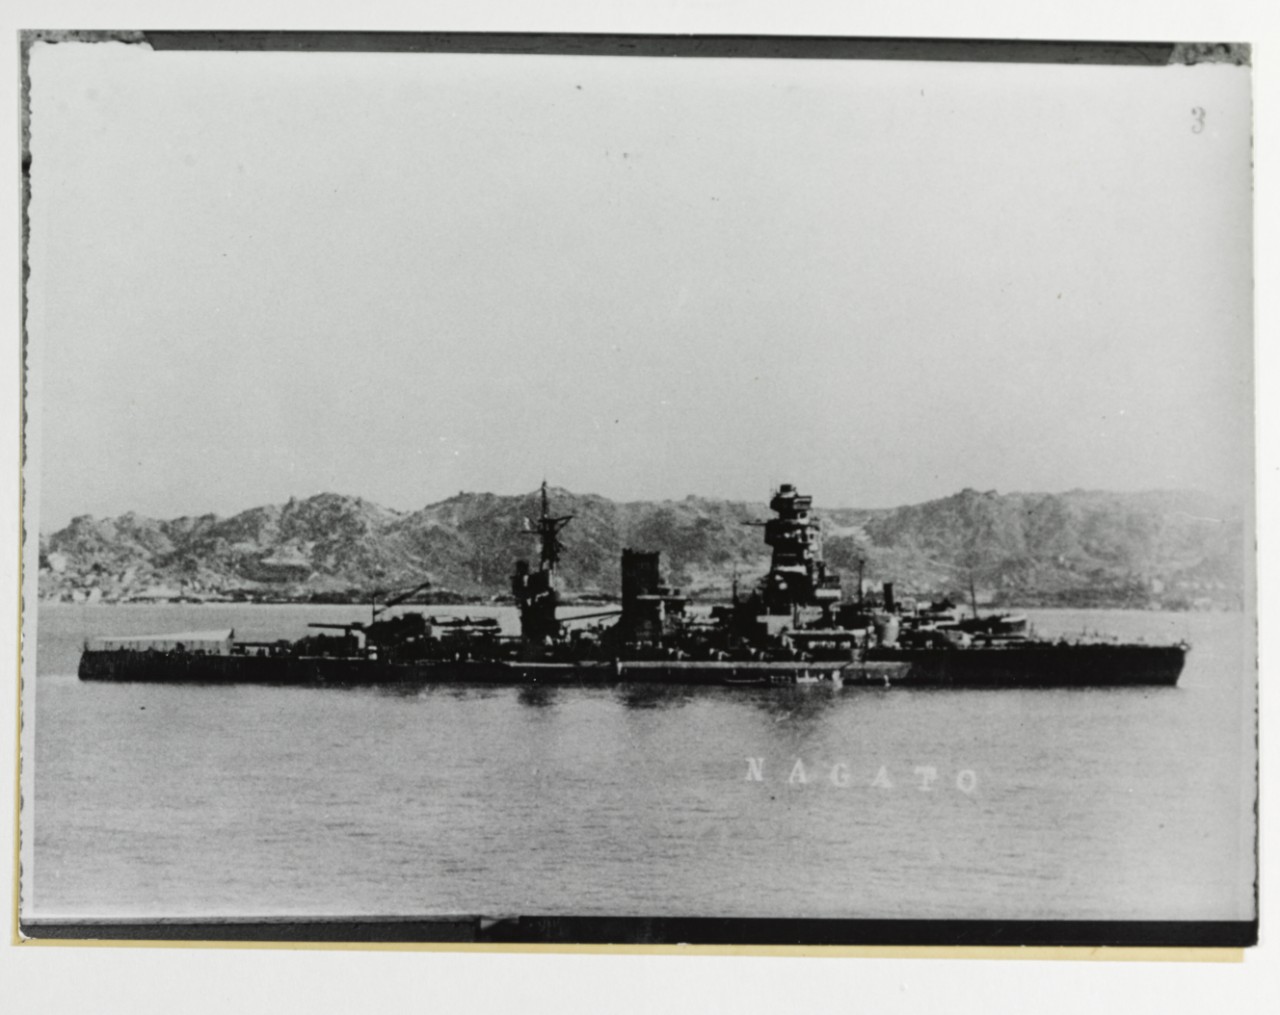 MUTSU (Japanese Battleship, 1920)